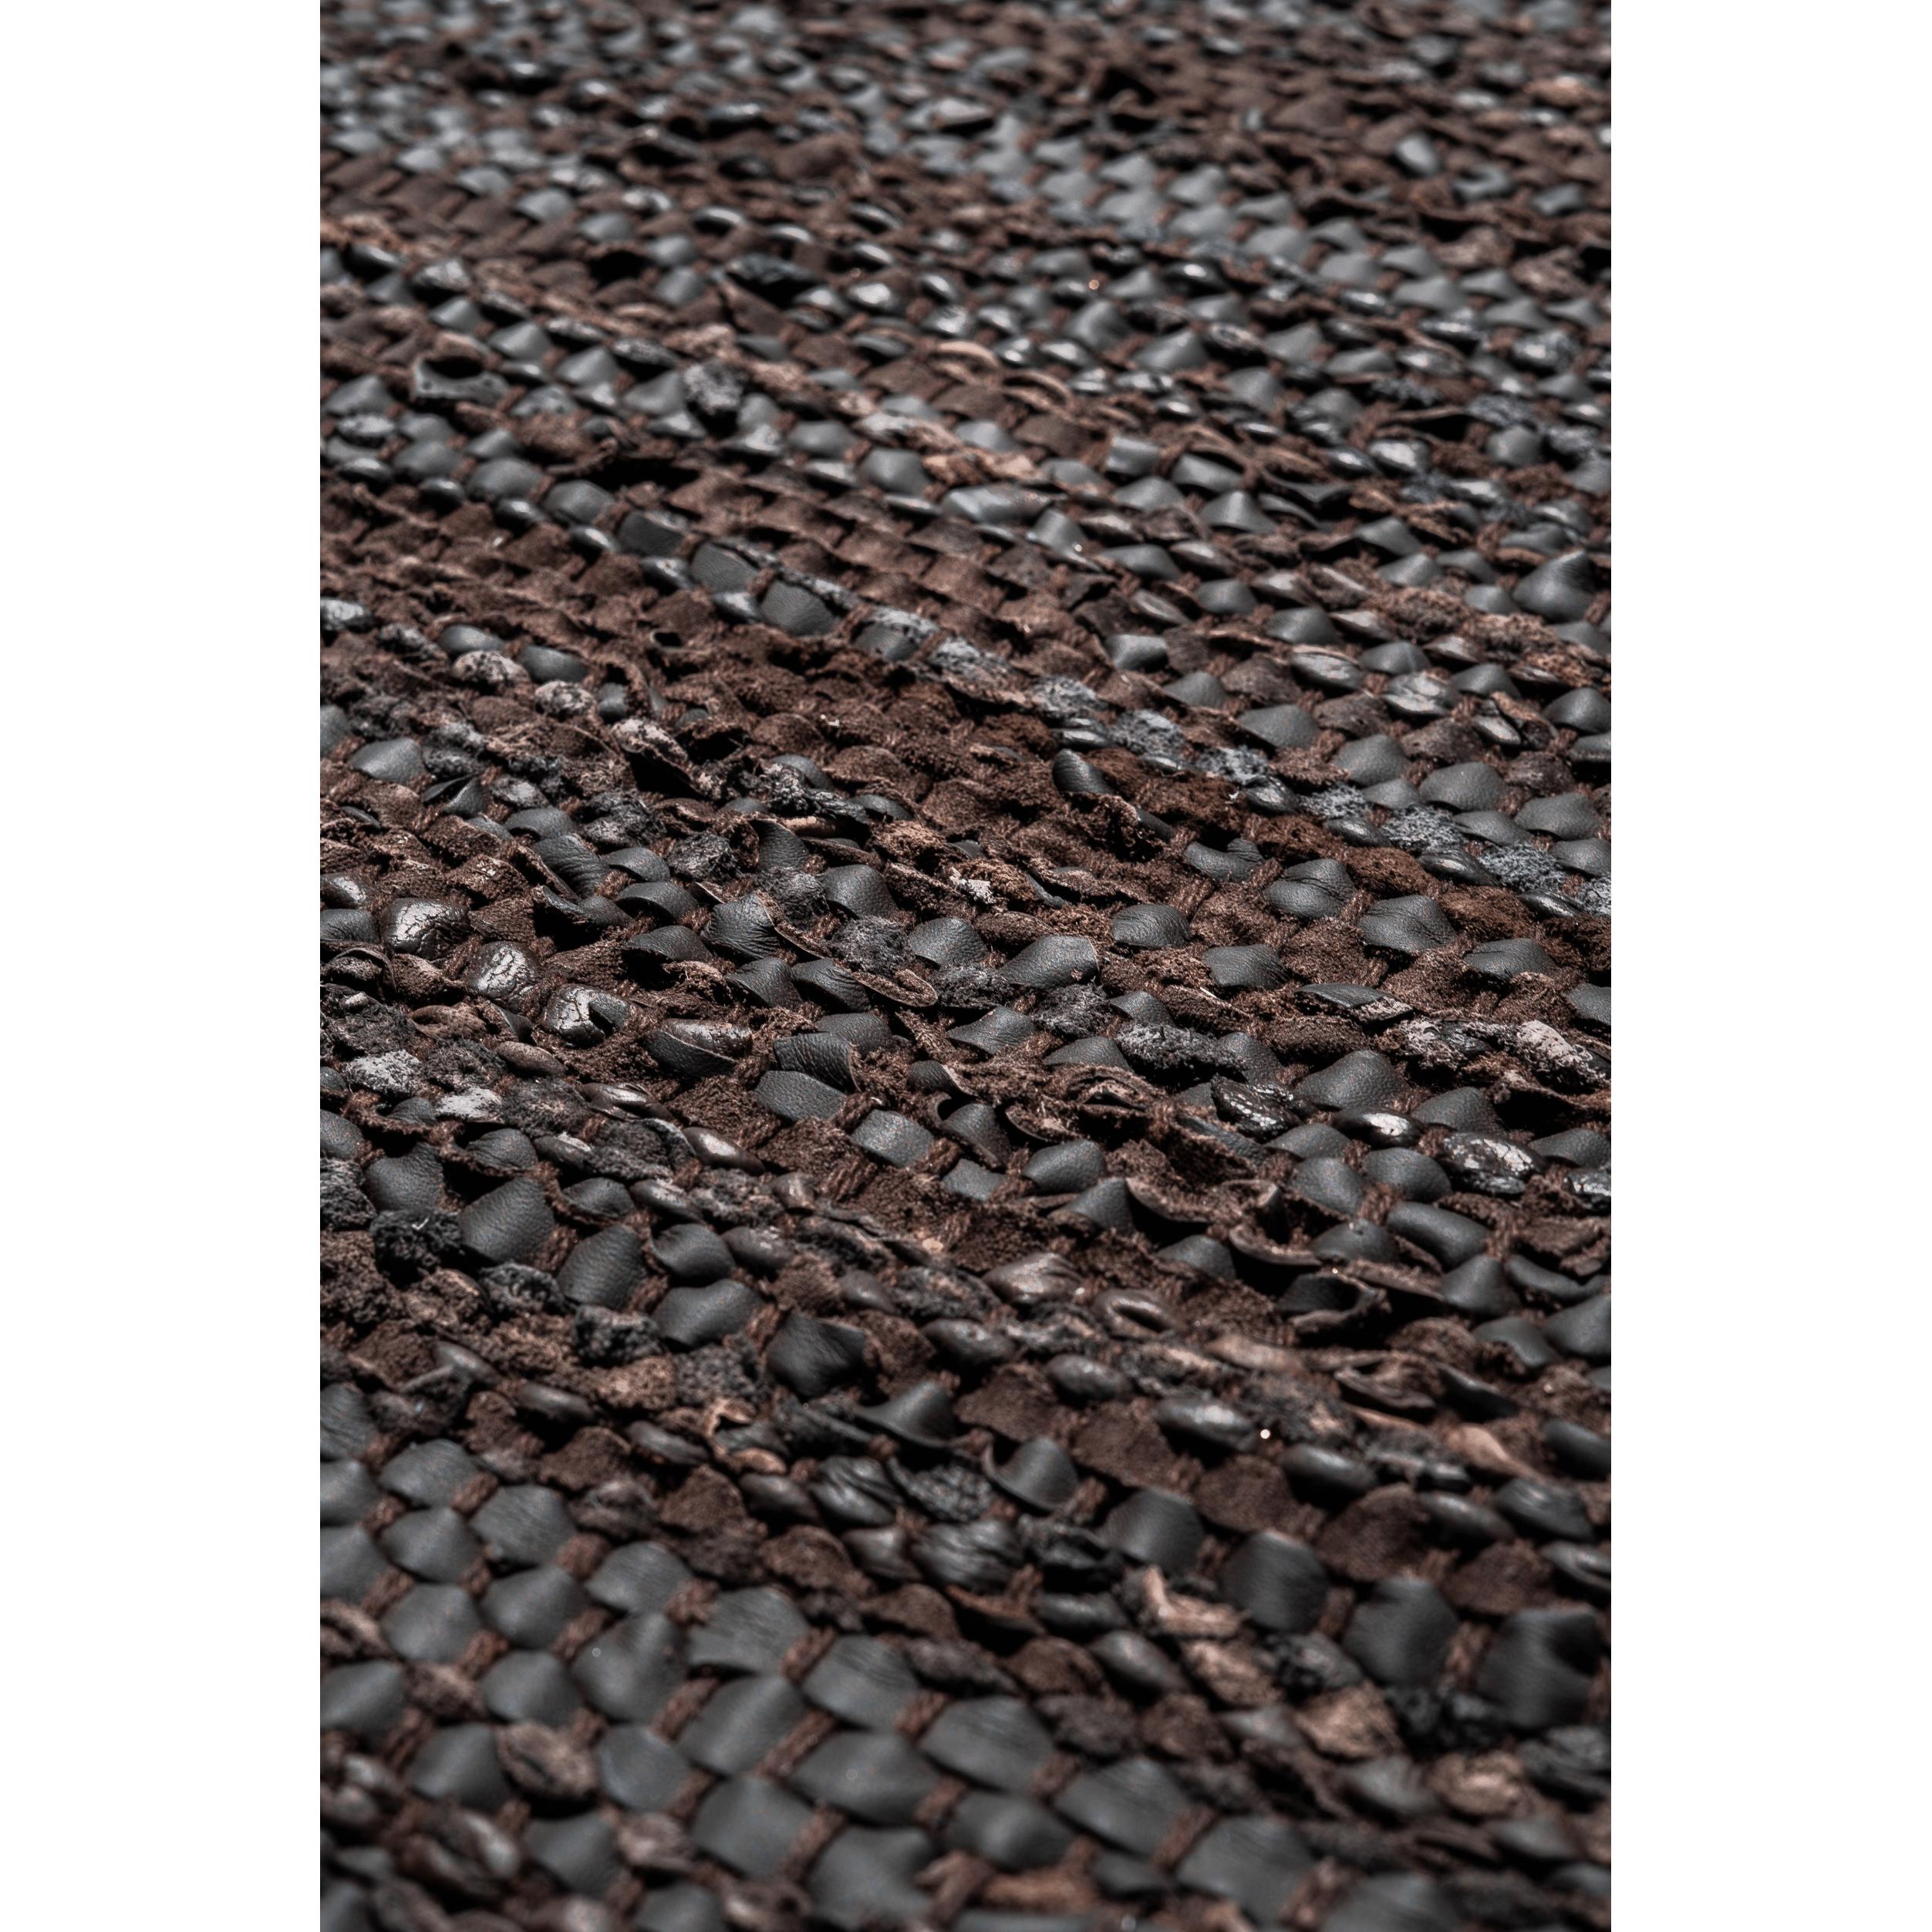 Dywany dywan skórzany Choco, 200 x 300 cm